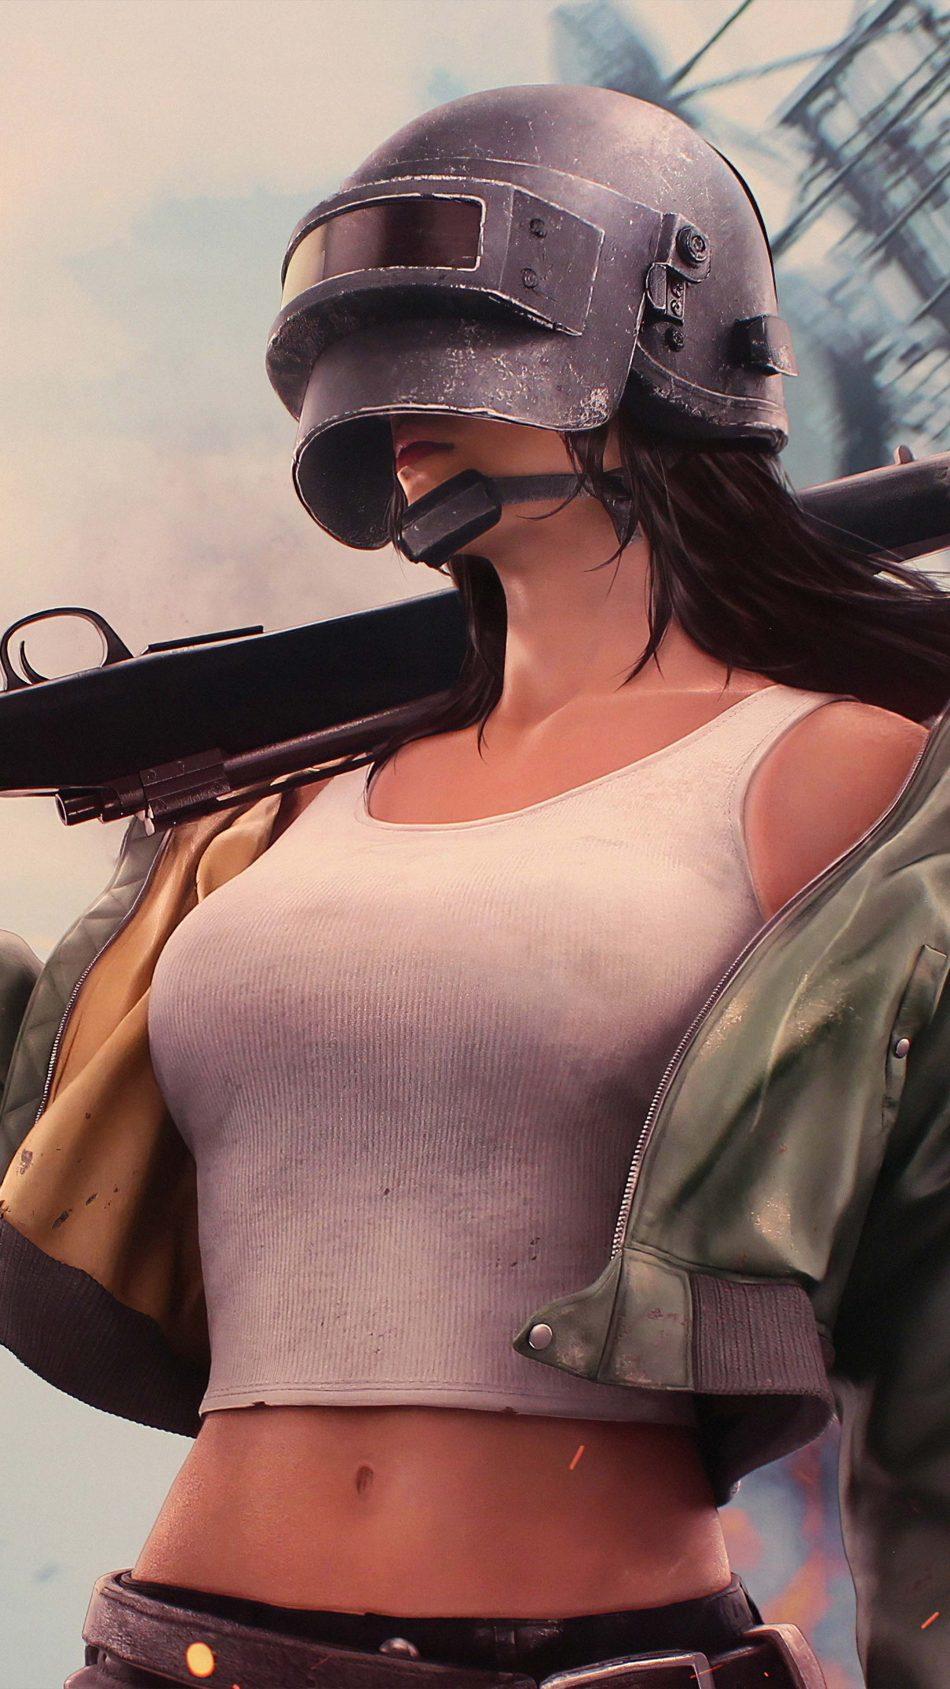 PUBG Girl Level 3 Helmet With Sniper Free 4K Ultra HD Mobile Wallpaper